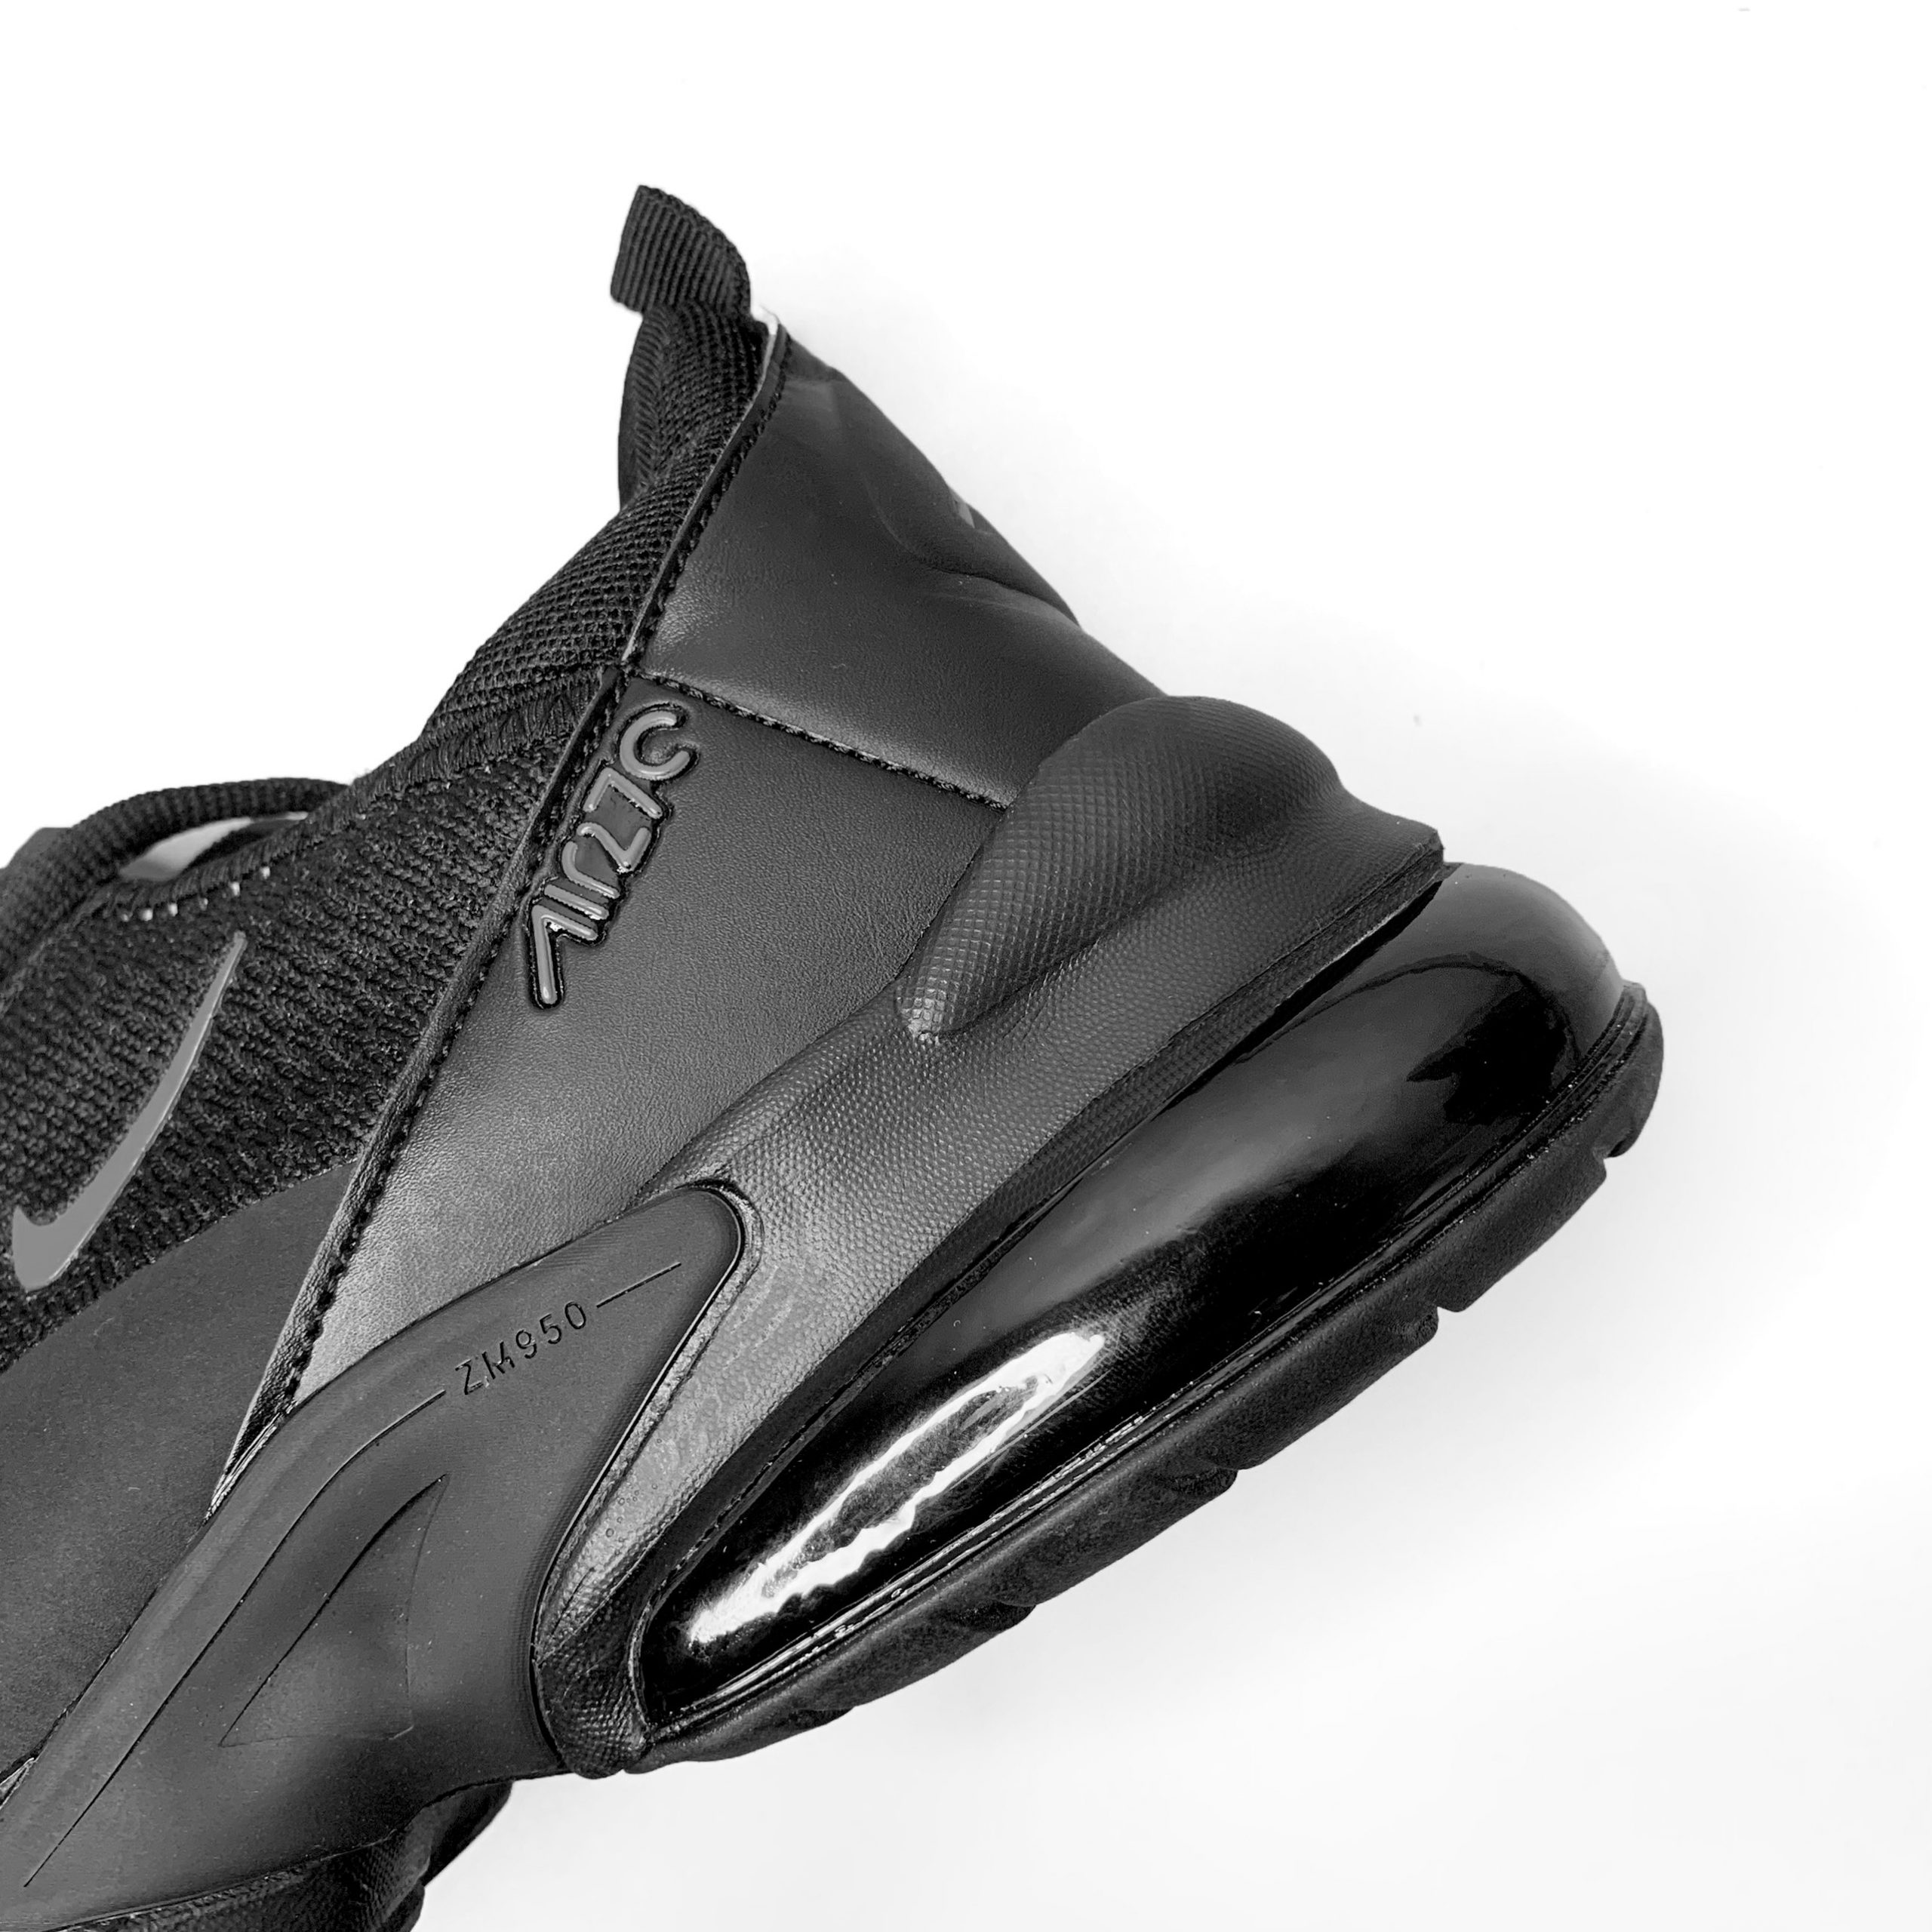 Nike Air Max 270 Runners Black - Teemosneaker